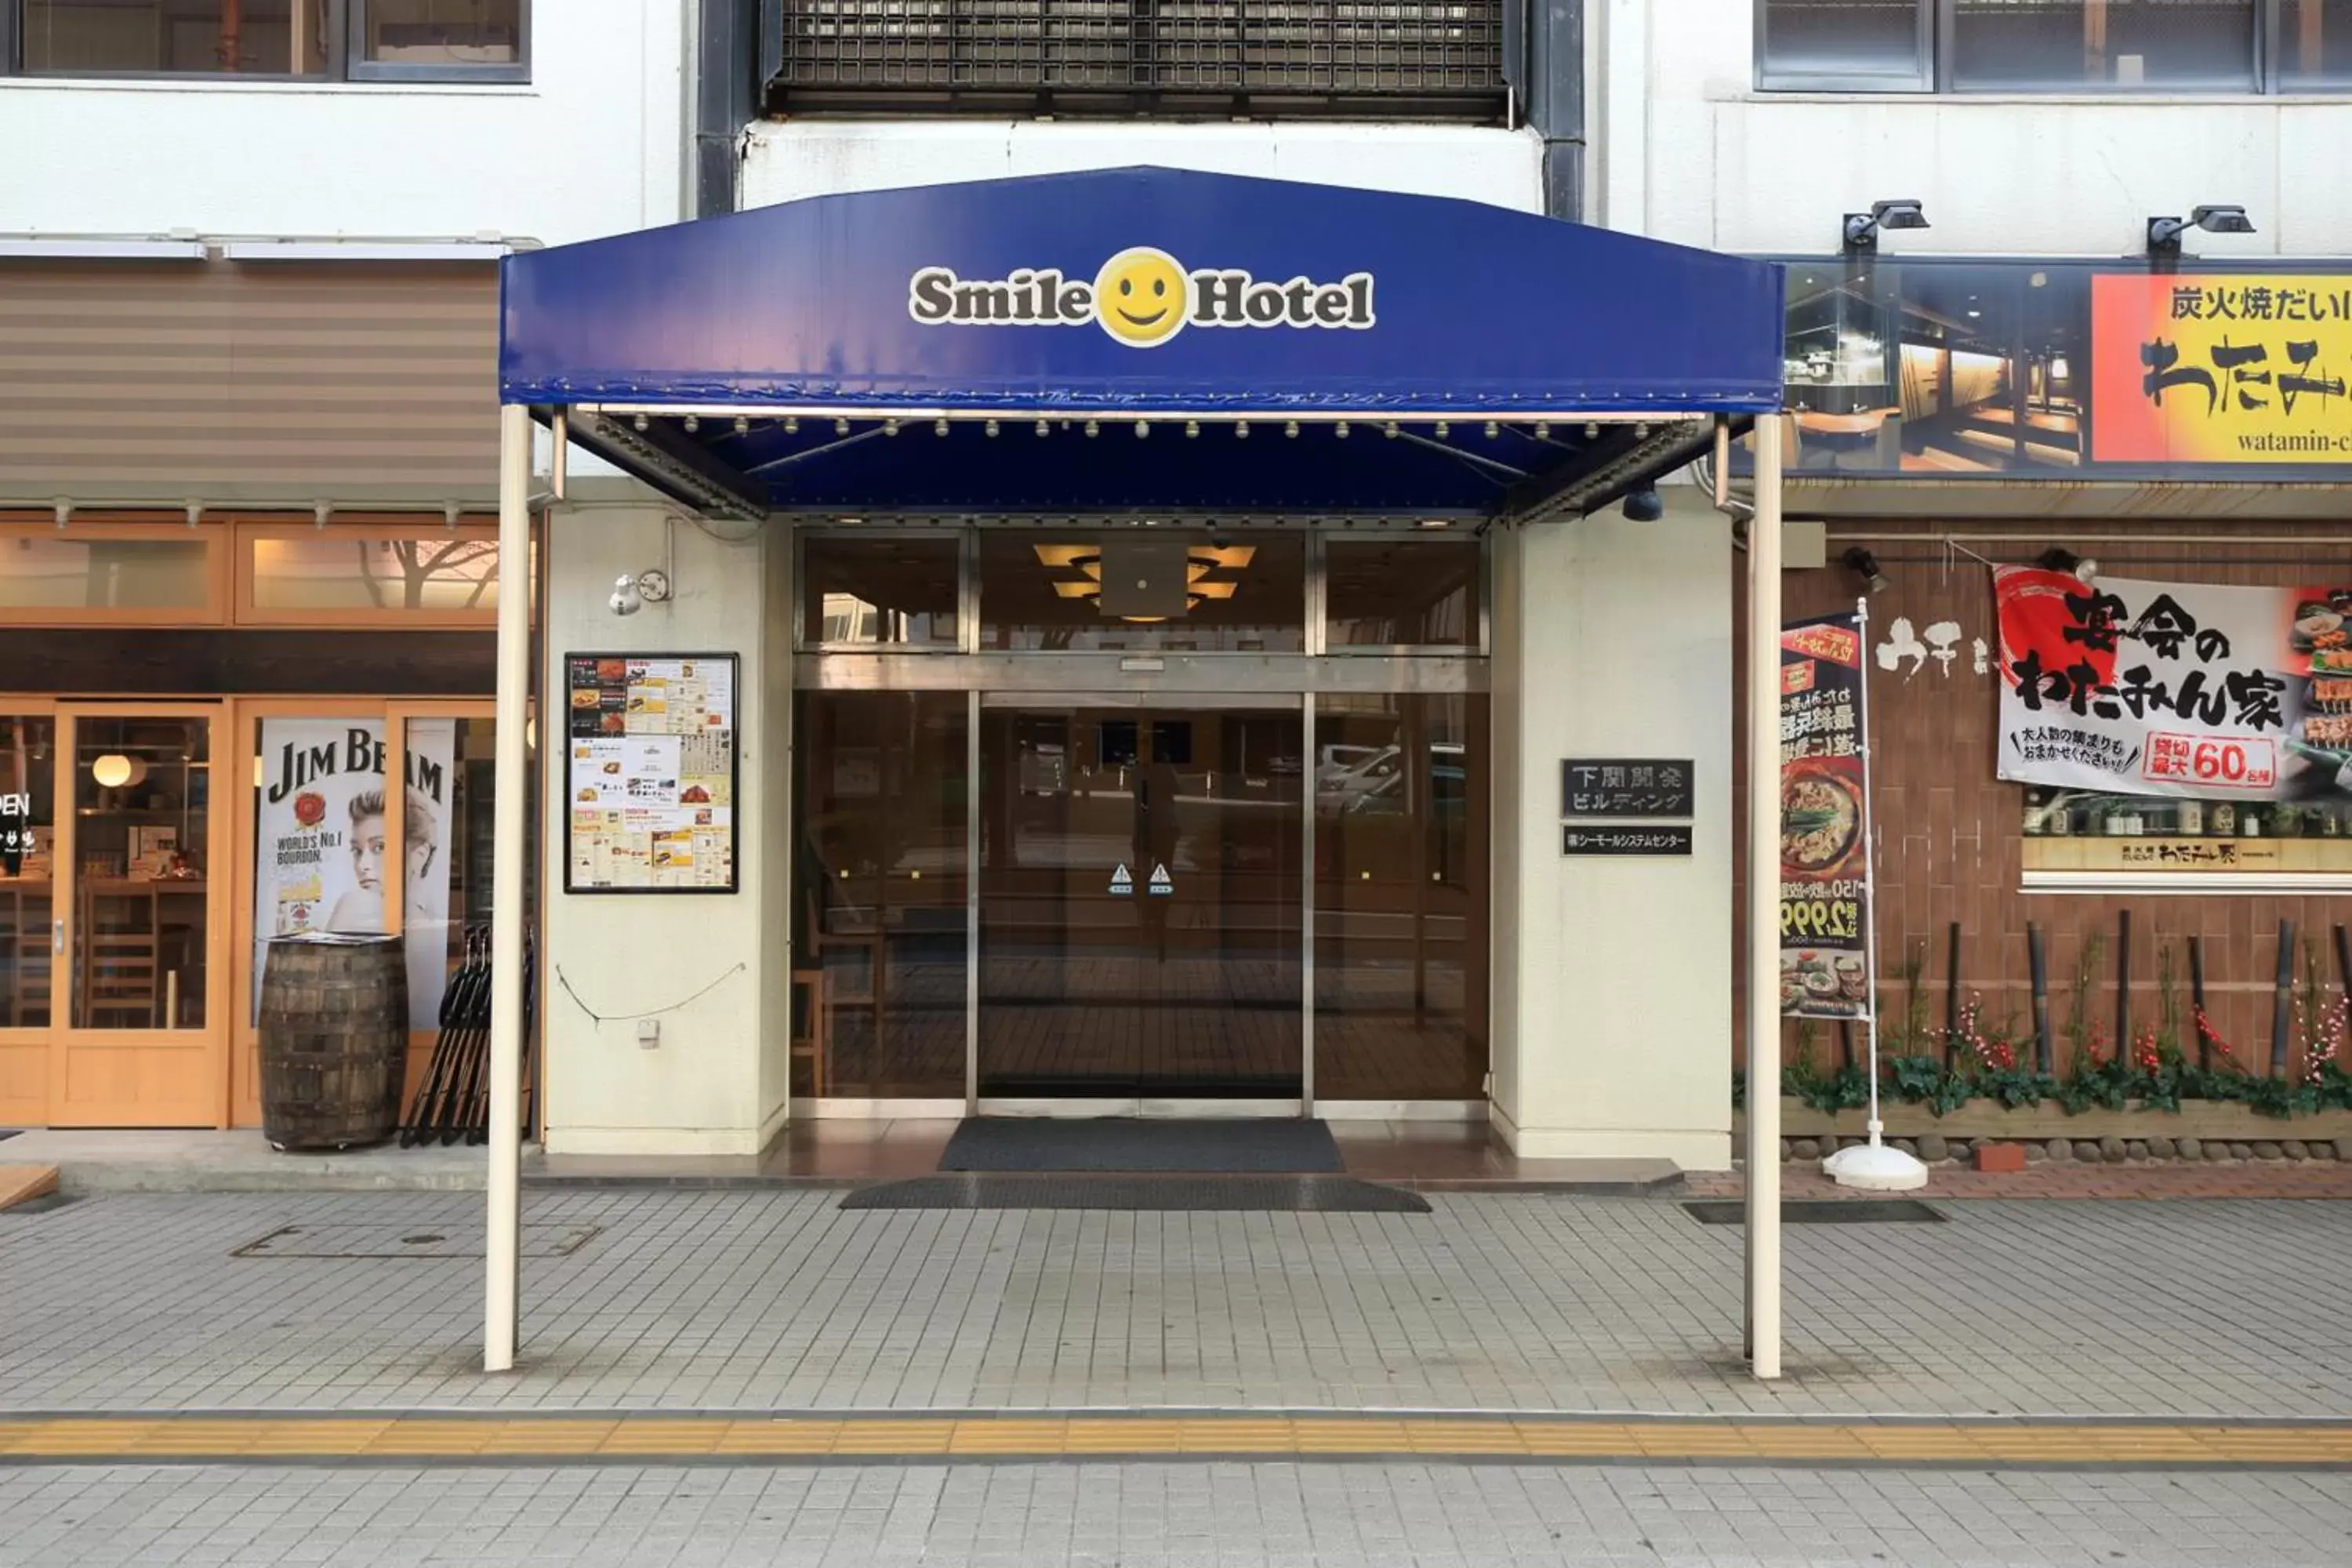 Facade/entrance in Smile Hotel Shimonoseki